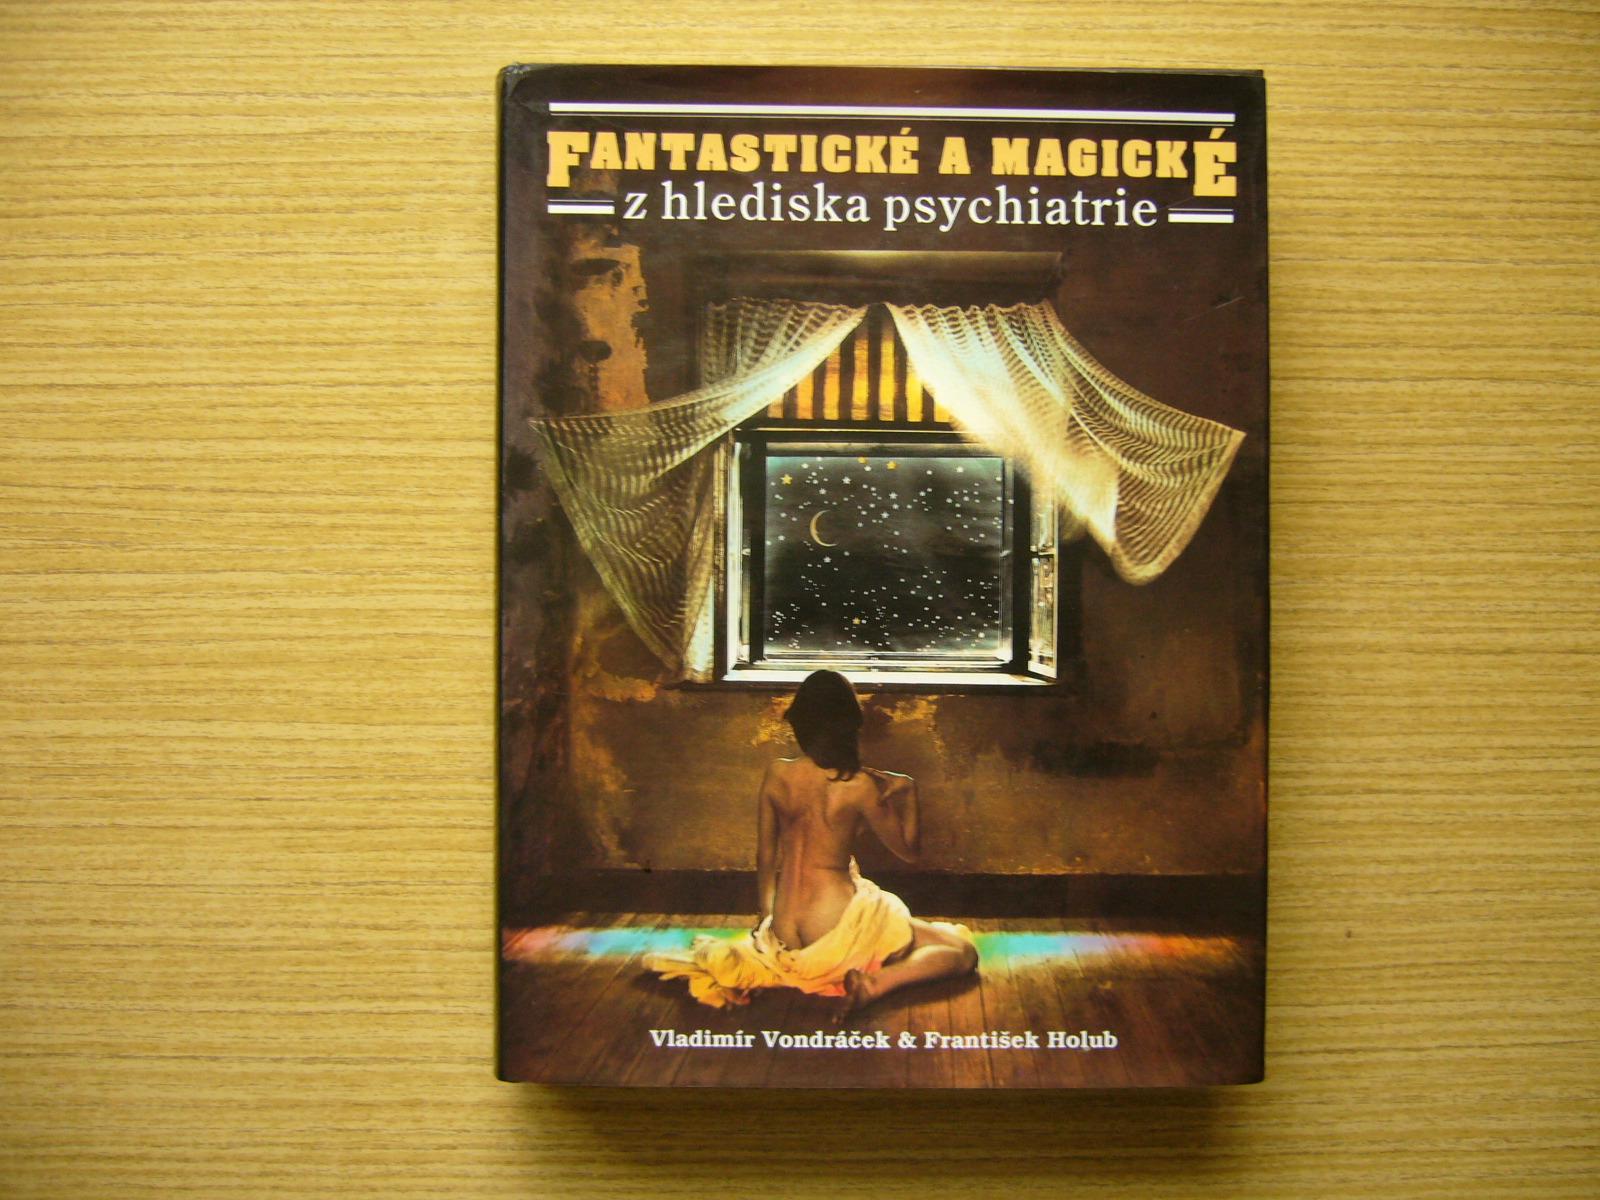 Vondráček, Holub - Fantastické a magické z hlediska psychiatrie. 1993a - Knihy